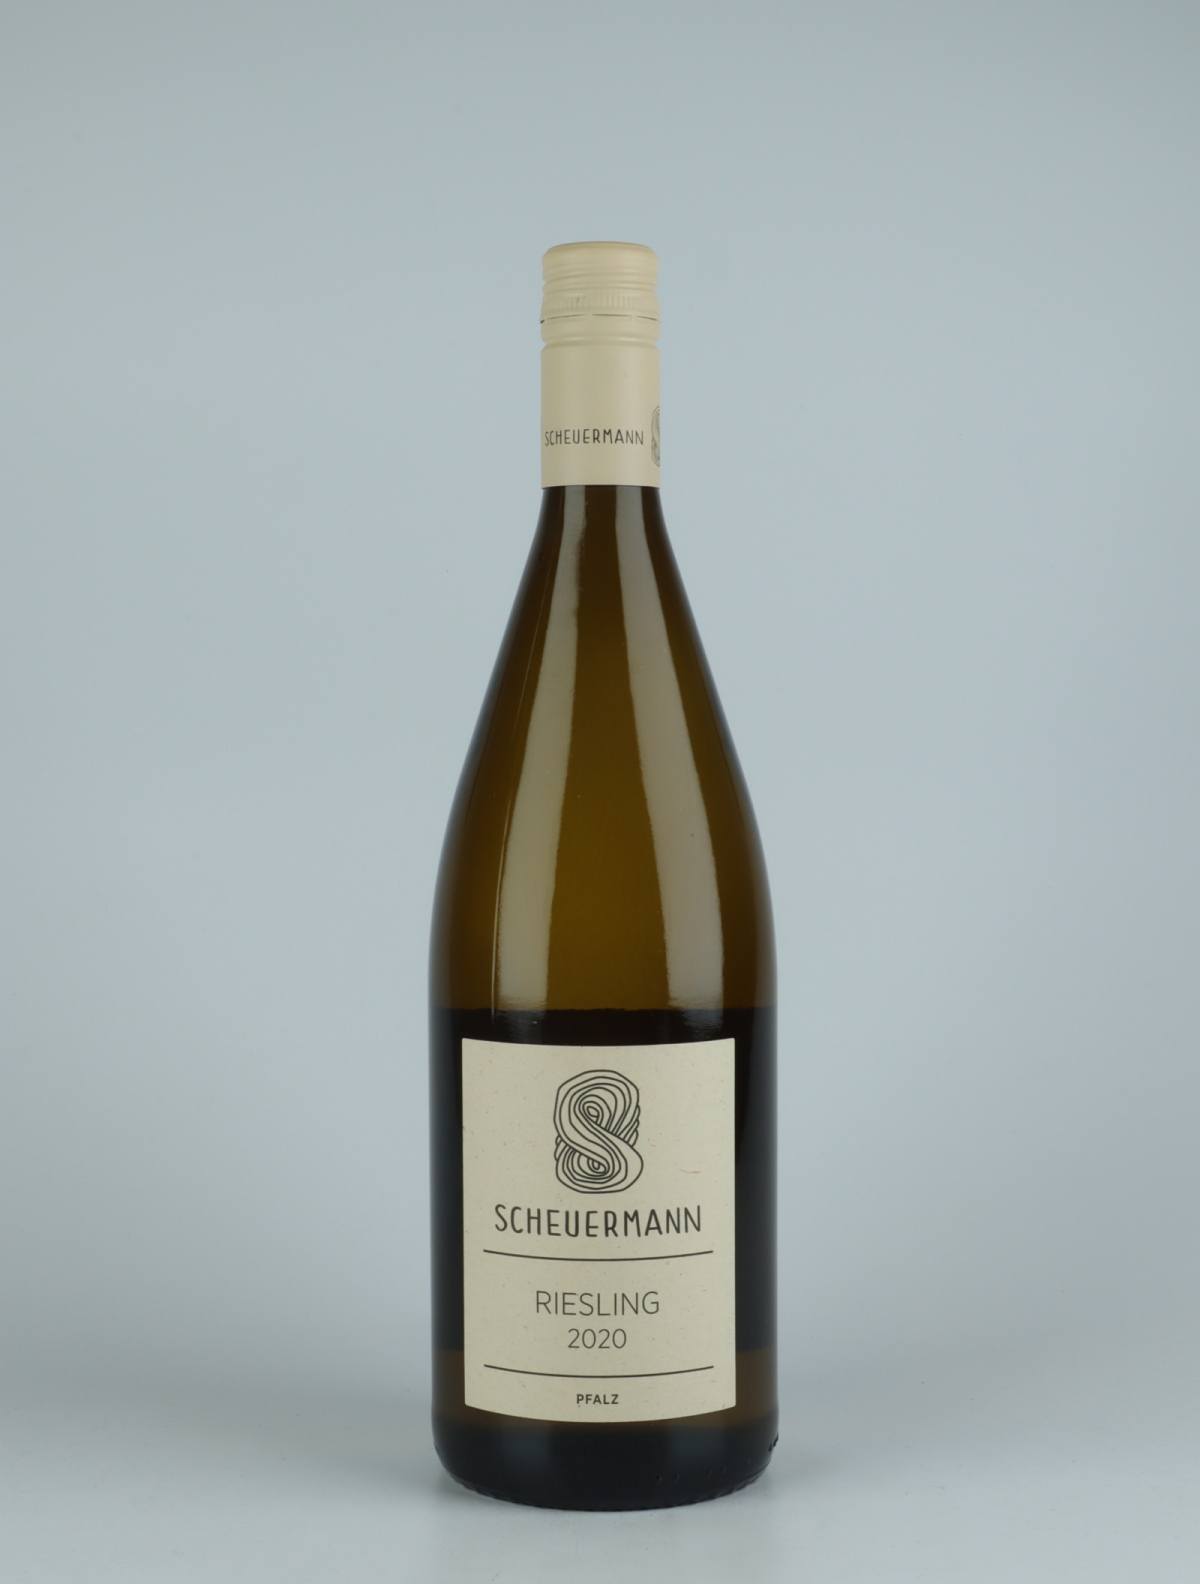 A bottle 2020 Riesling Trocken Liter White wine from Weingut Scheuermann, Pfalz in Germany